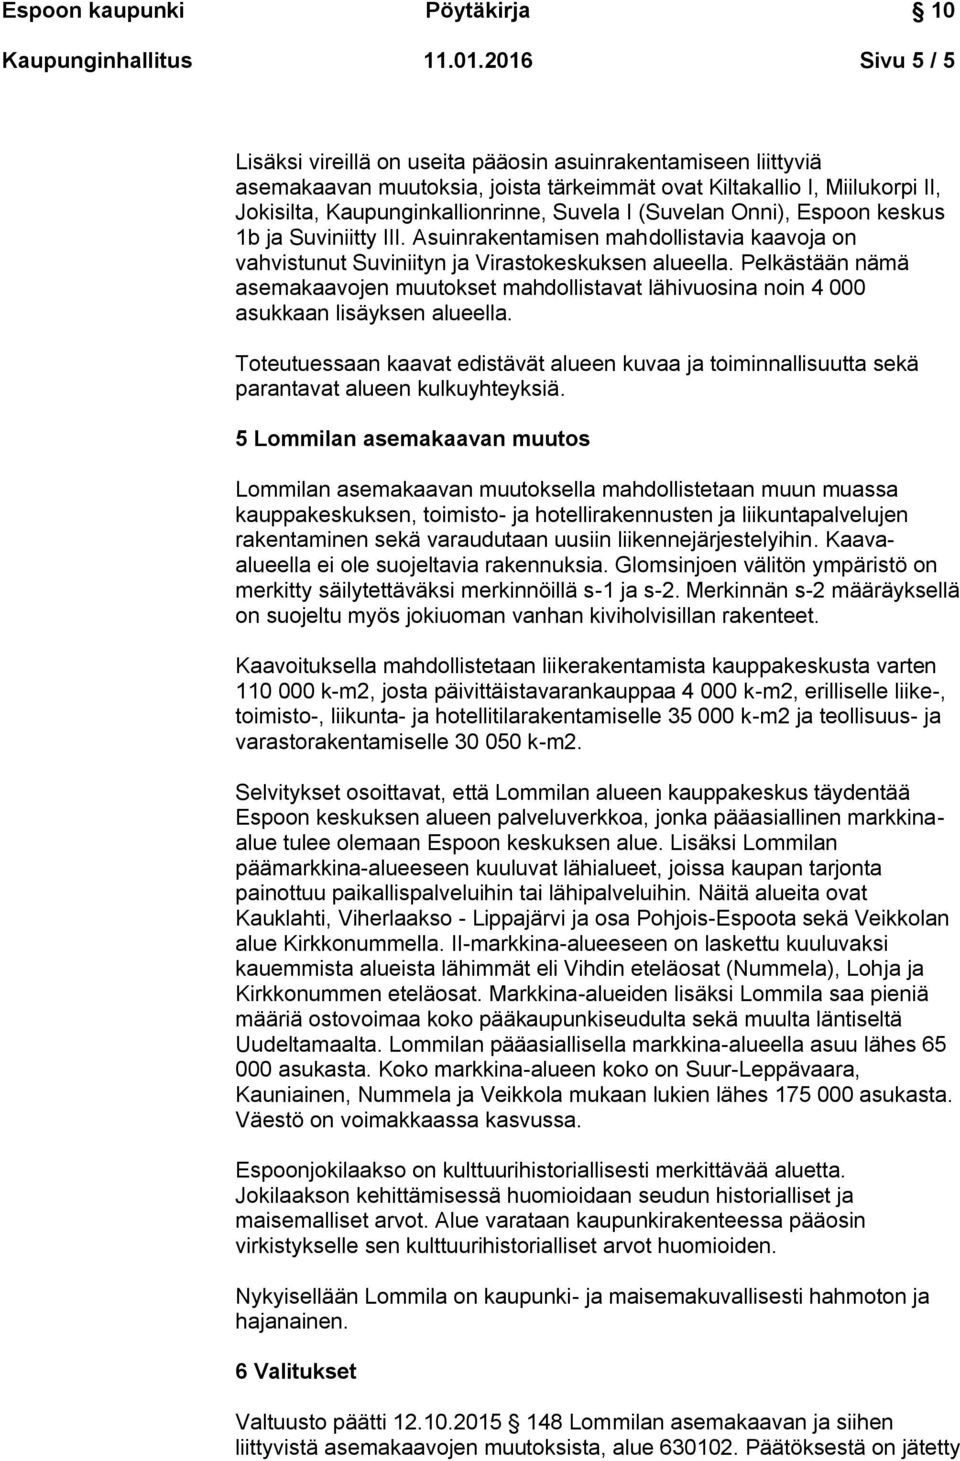 (Suvelan Onni), Espoon keskus 1b ja Suviniitty III. Asuinrakentamisen mahdollistavia kaavoja on vahvistunut Suviniityn ja Virastokeskuksen alueella.